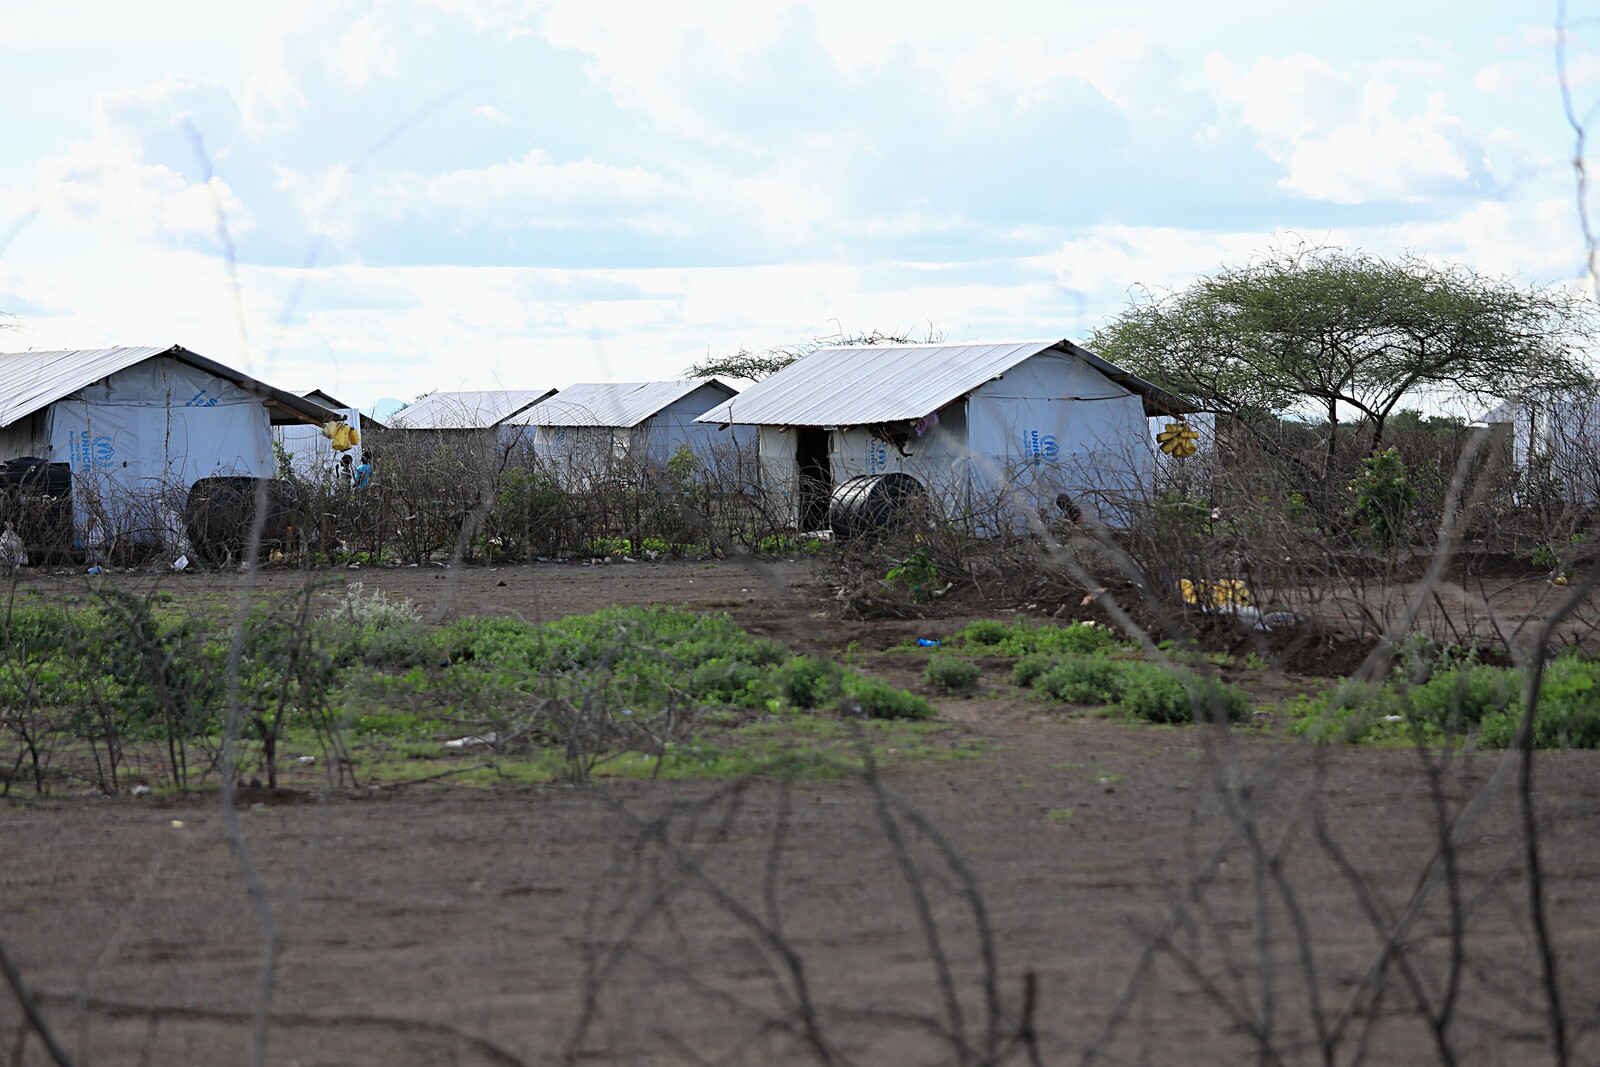 Die Häuser in Kalobiyei bestehen noch aus Plastikplanen und Wellblechdächern. Hier soll eine integrierte Siedlung entstehen, mit Steinhäusern und Landwirtschaft, ähnlich zu dem Konzept in Uganda.